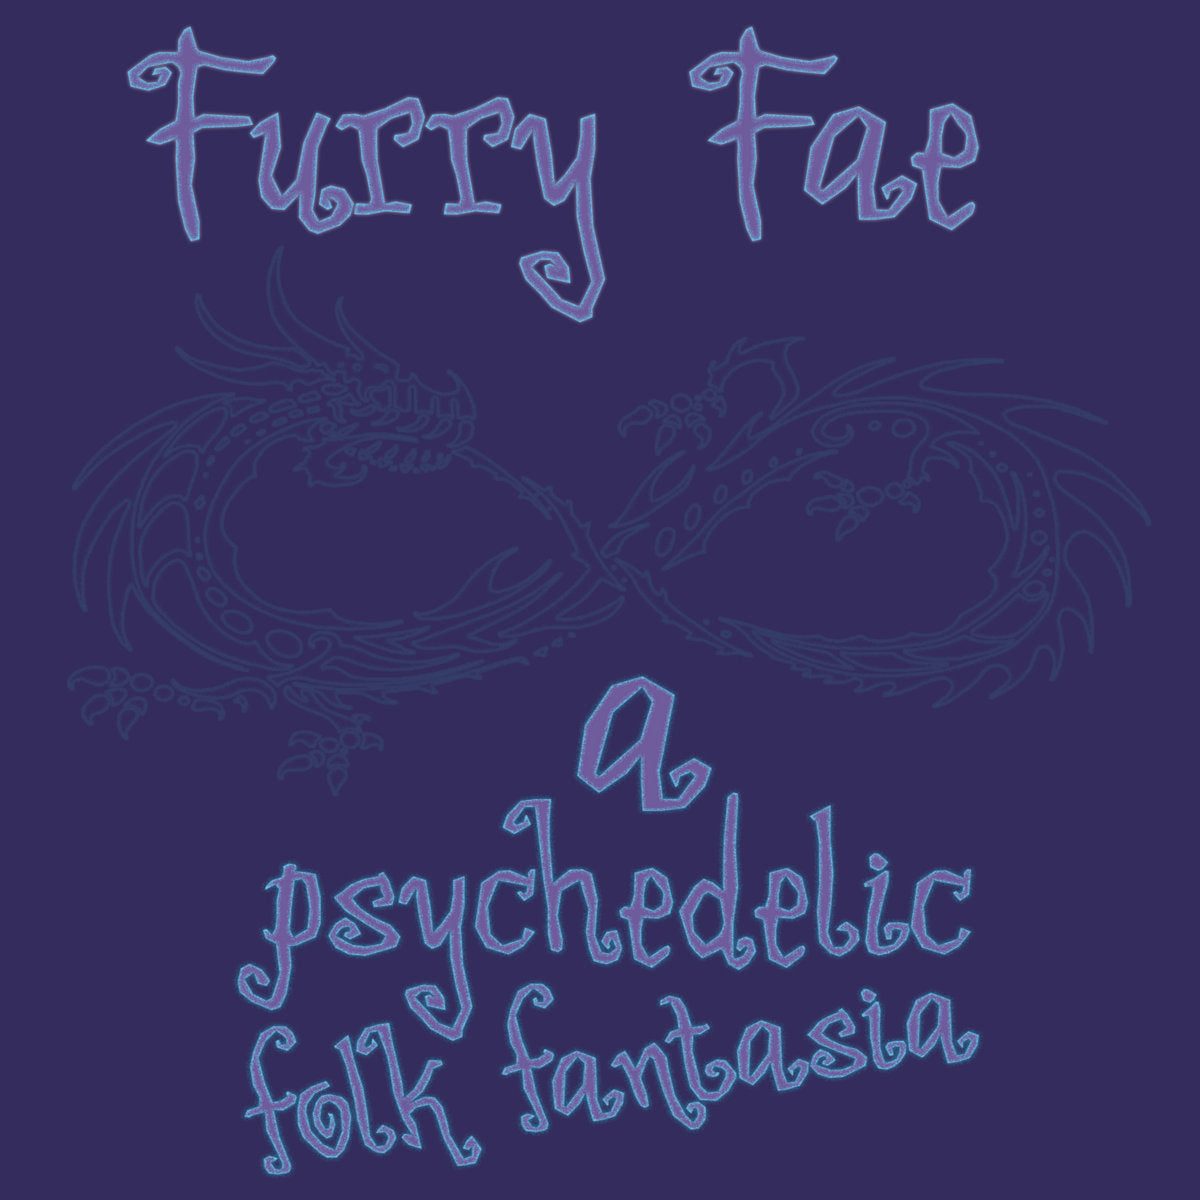 Furry Fae - cassette & lyric book bundle